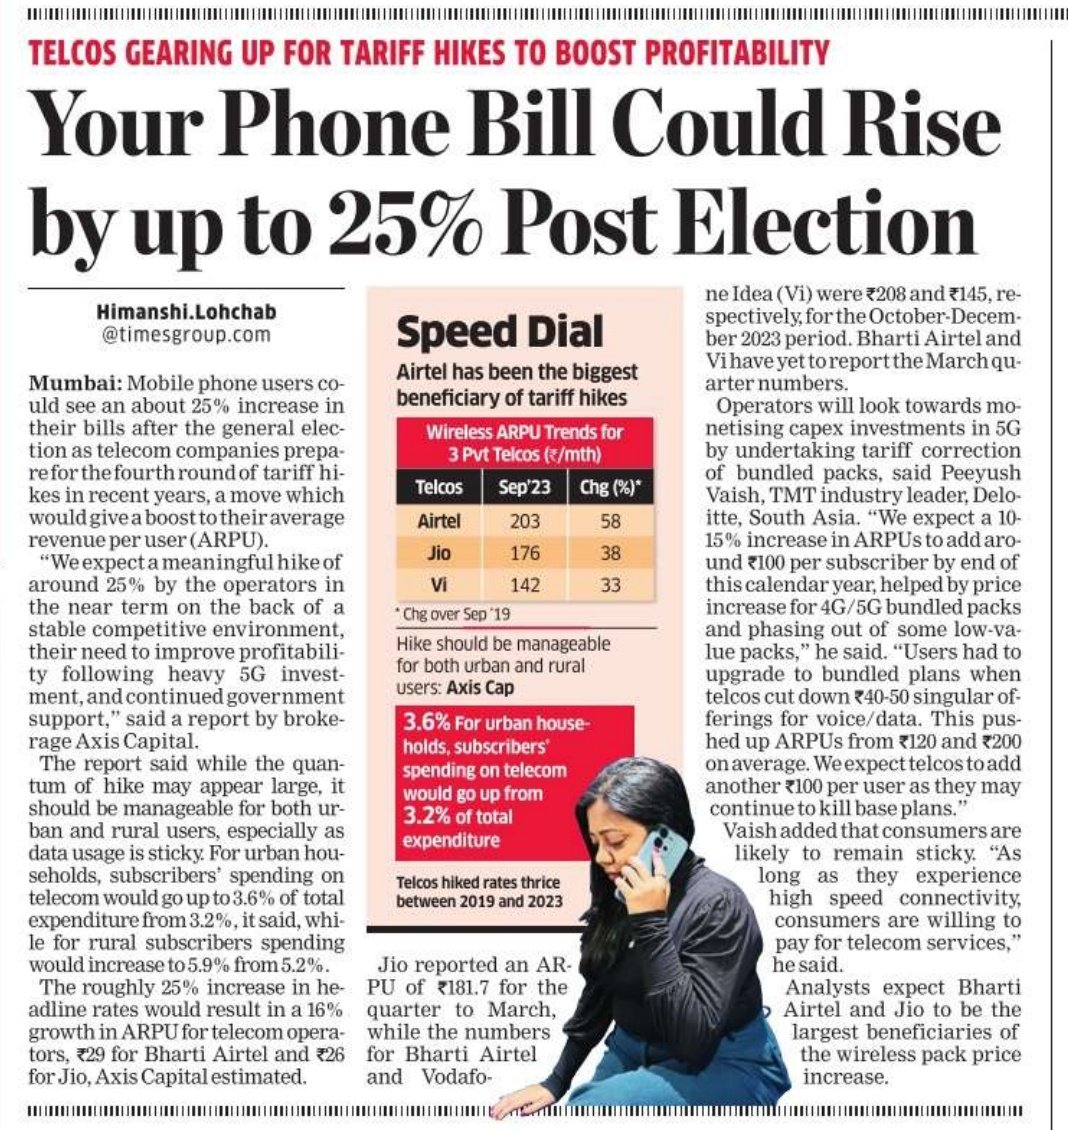 लगता है सस्ता आटा मांगने पर सस्ता डाटा देने की बात करने वालों ने बस चुनाव खत्म होने तक इंतजार करने के लिए कहा है।